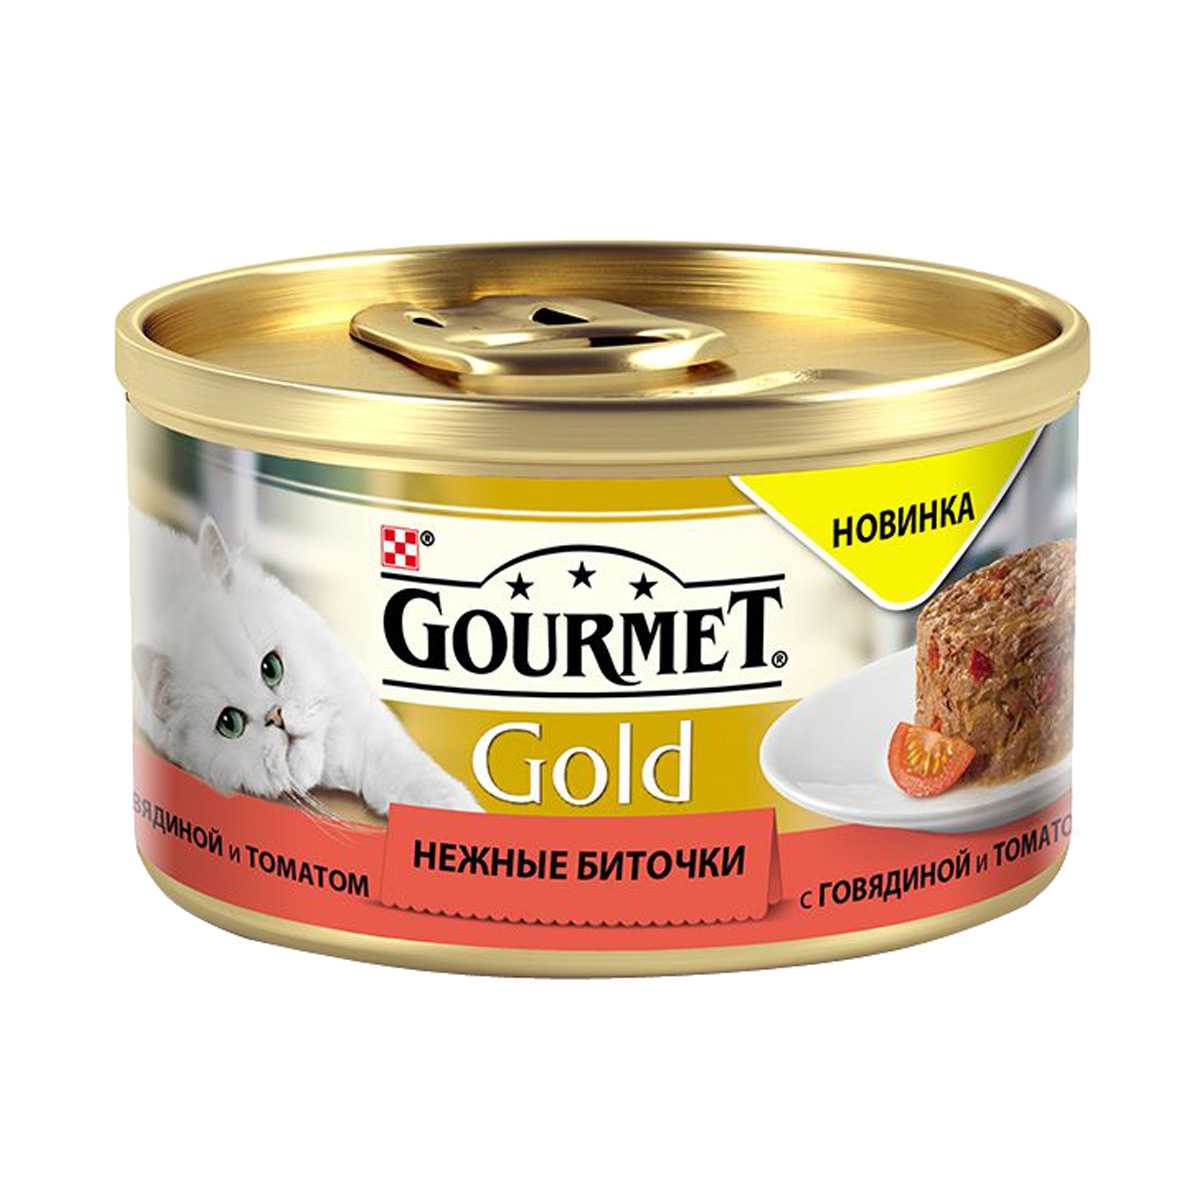 Gourmet (Гурме) Gold - Корм для кошек Нежные Биточки с Говядиной и Томатом (Банка)